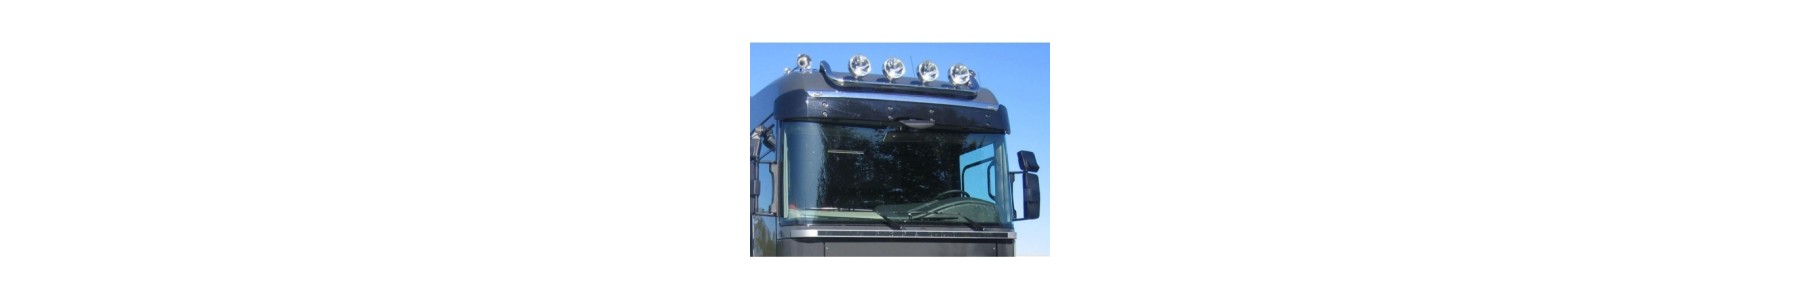 Rampe de toit pour votre camionRenault PREMIUM 22H22 Vente accessoires tuning poids lourd